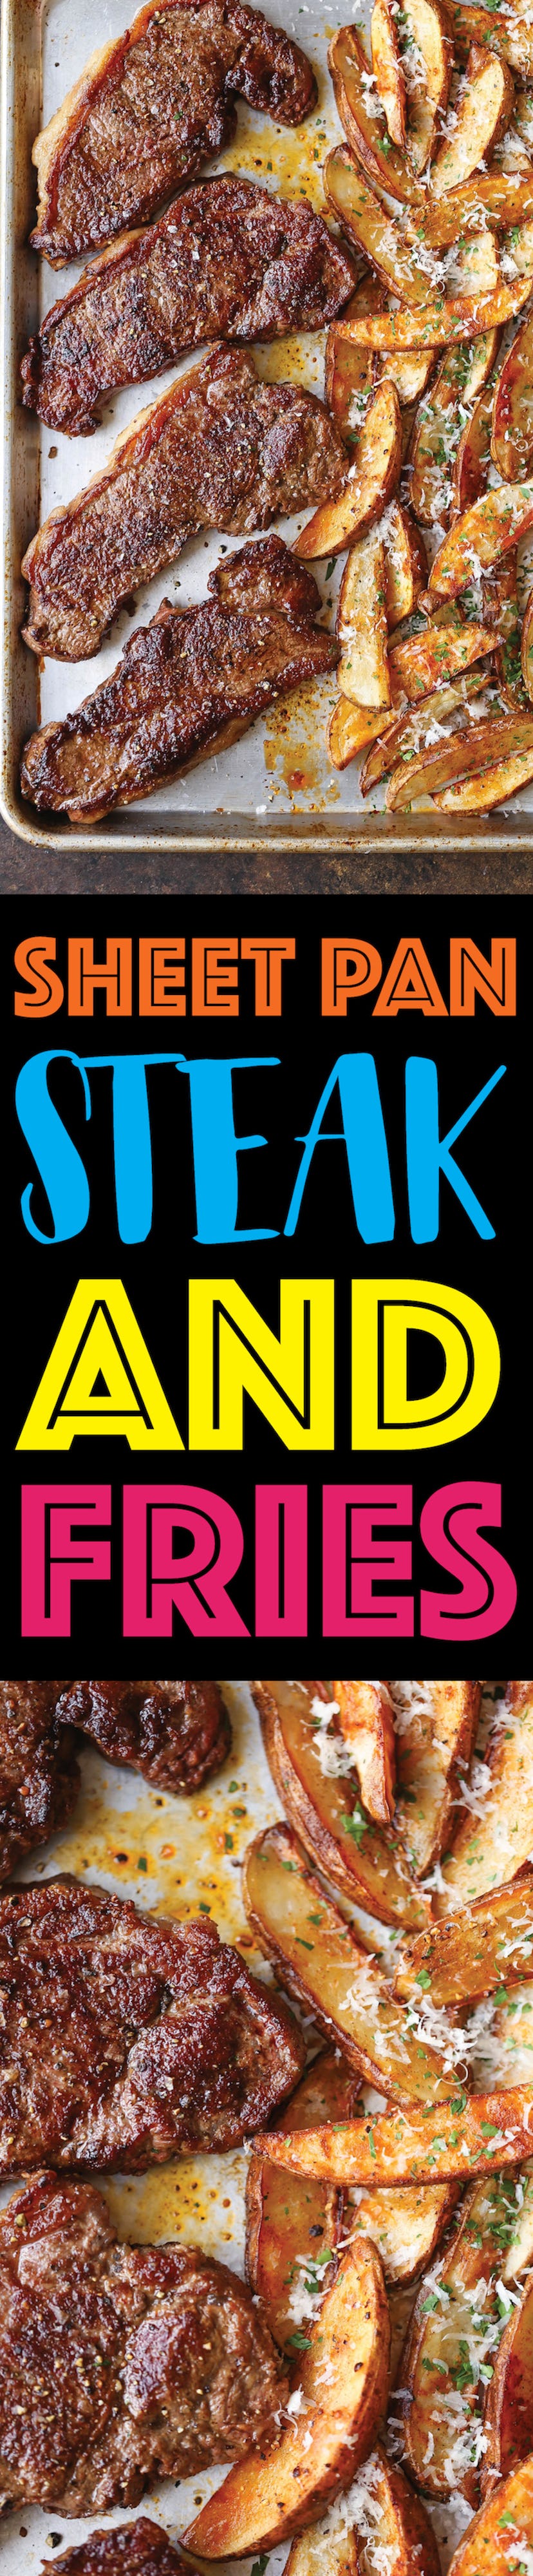 sheet pan recipes with steak, sheet pan steak and fries